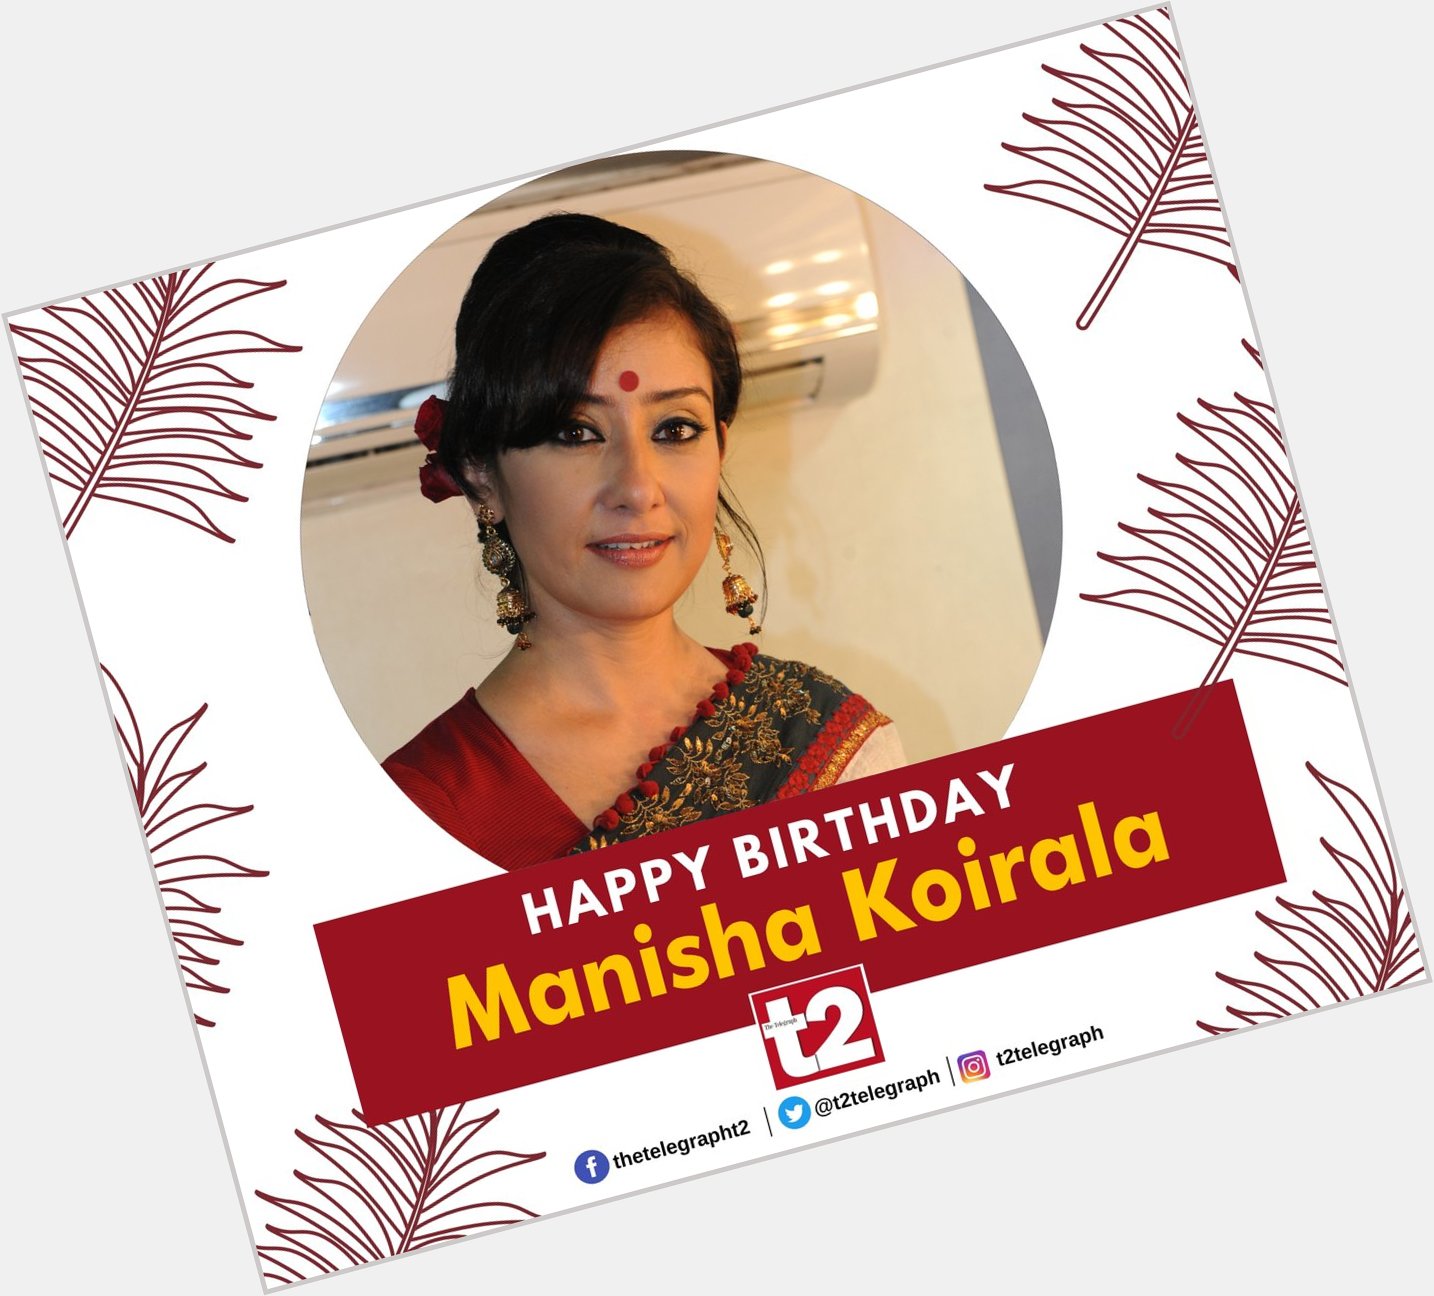 She\s a survivor and still creates magic on screen. t2 wishes Manisha Koirala very happy birthday 